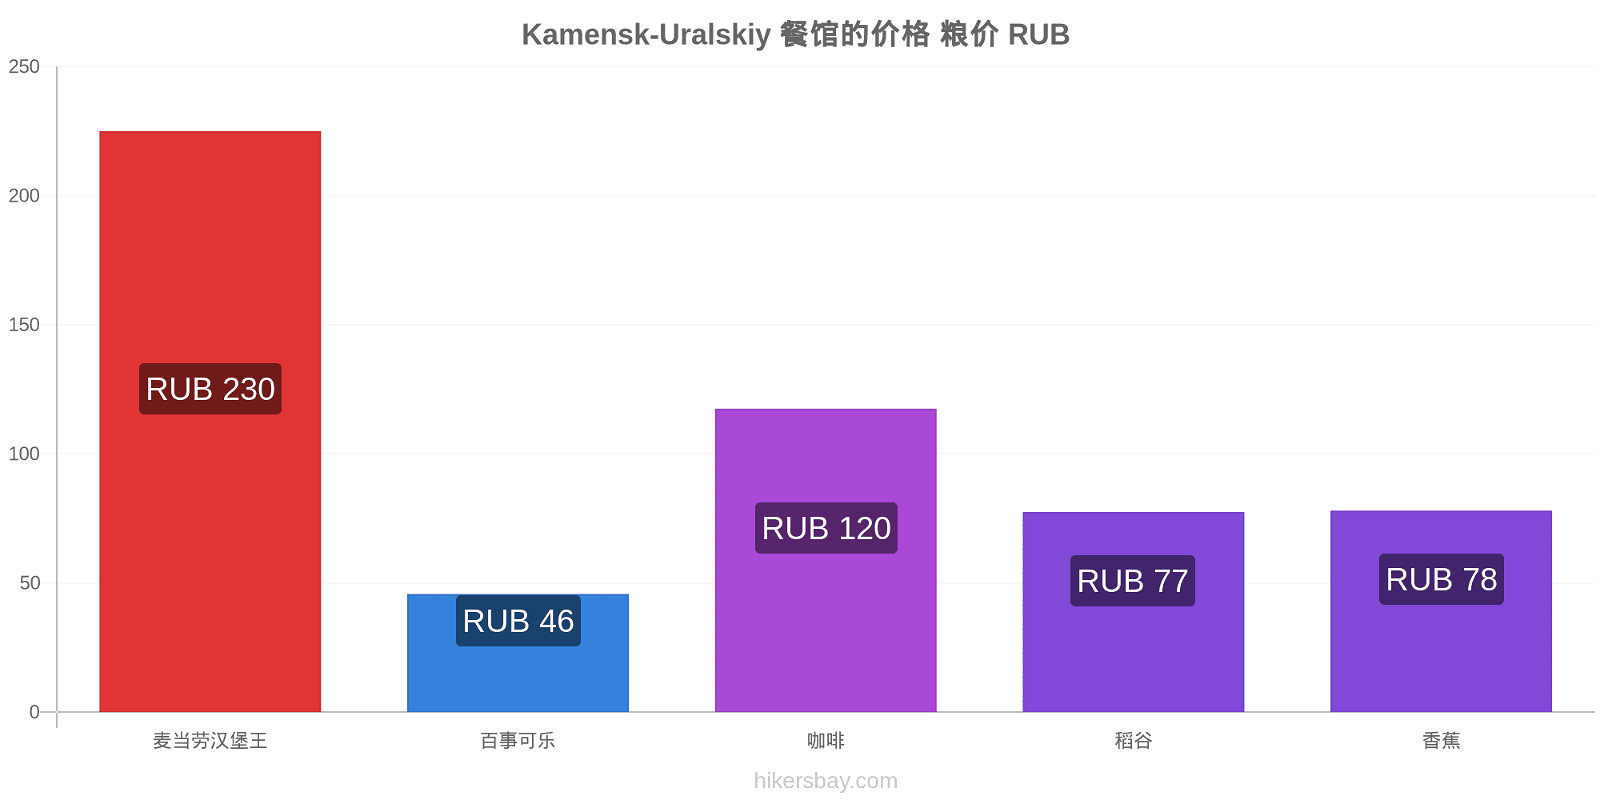 Kamensk-Uralskiy 价格变动 hikersbay.com